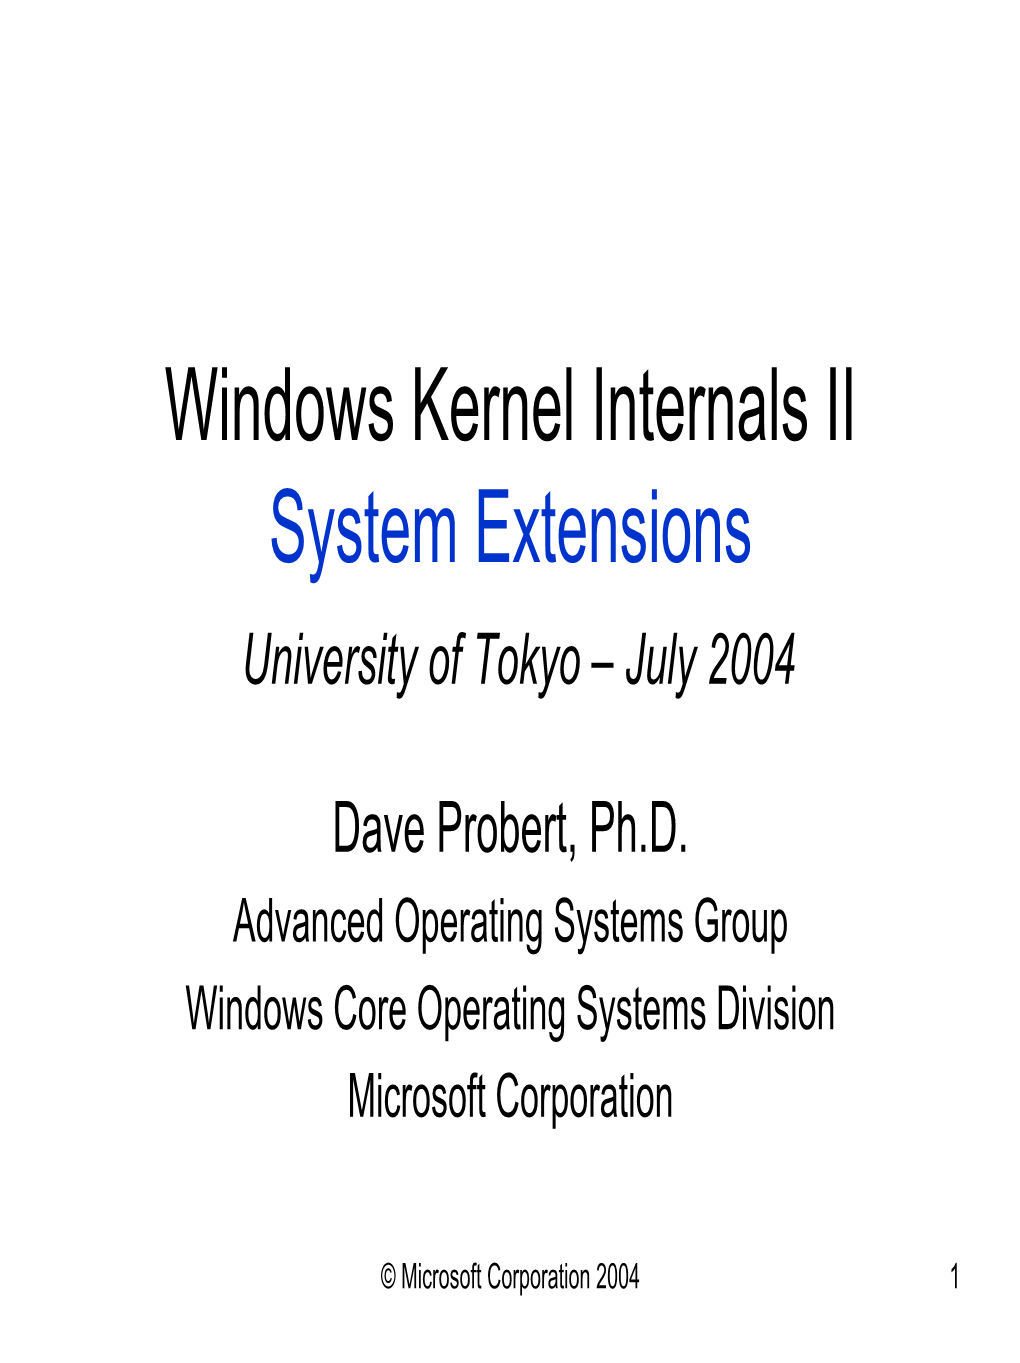 Windows Kernel Internals II Kernel Extensions